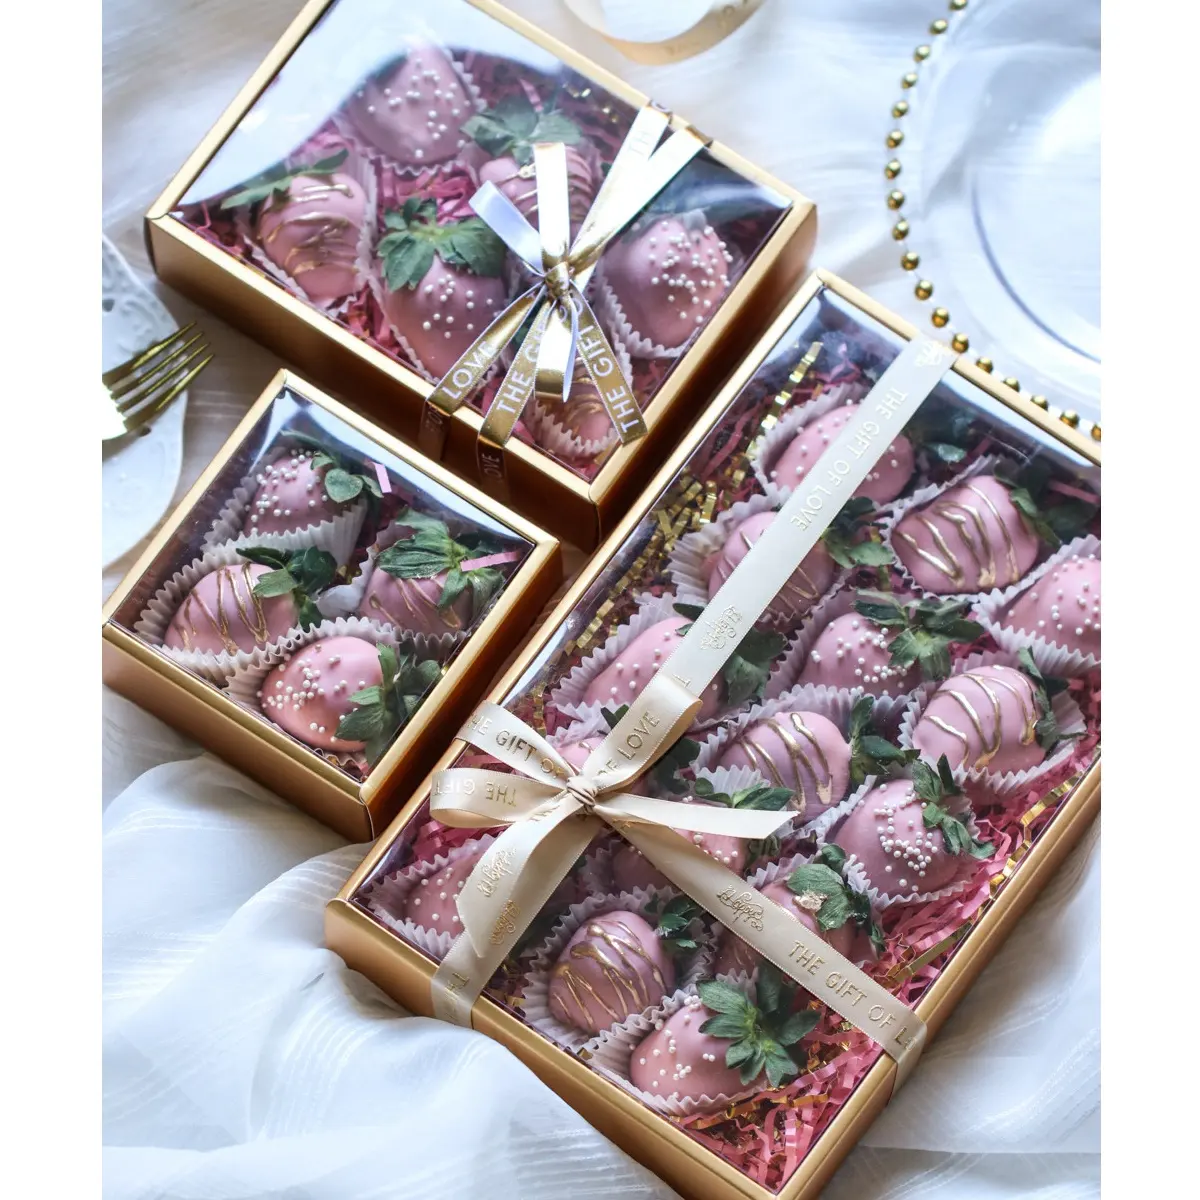 IMEE Kotak Kustom Mewah Natal Merah Emas Mewah Coklat Kue Permen Kue Kotak Roti dengan Tutup Bening Kotak Hadiah Hari Valentine